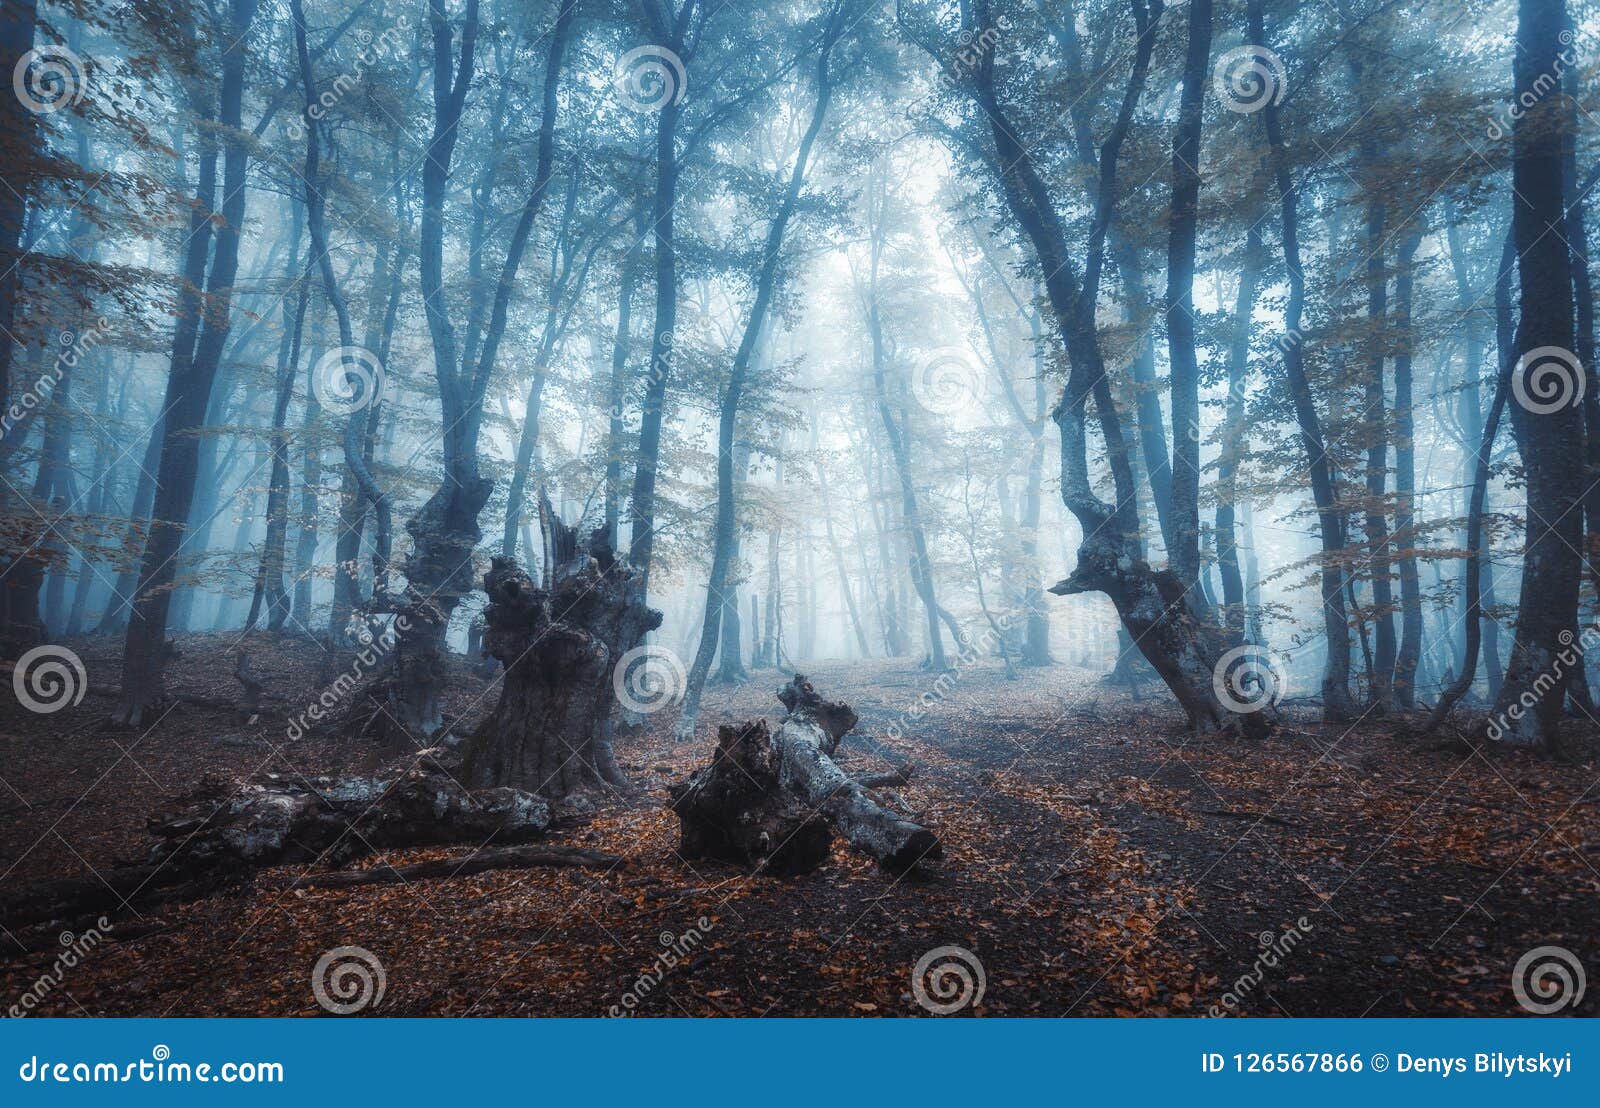 Ajardine a floresta escura no fundo da ilustração do estilo do